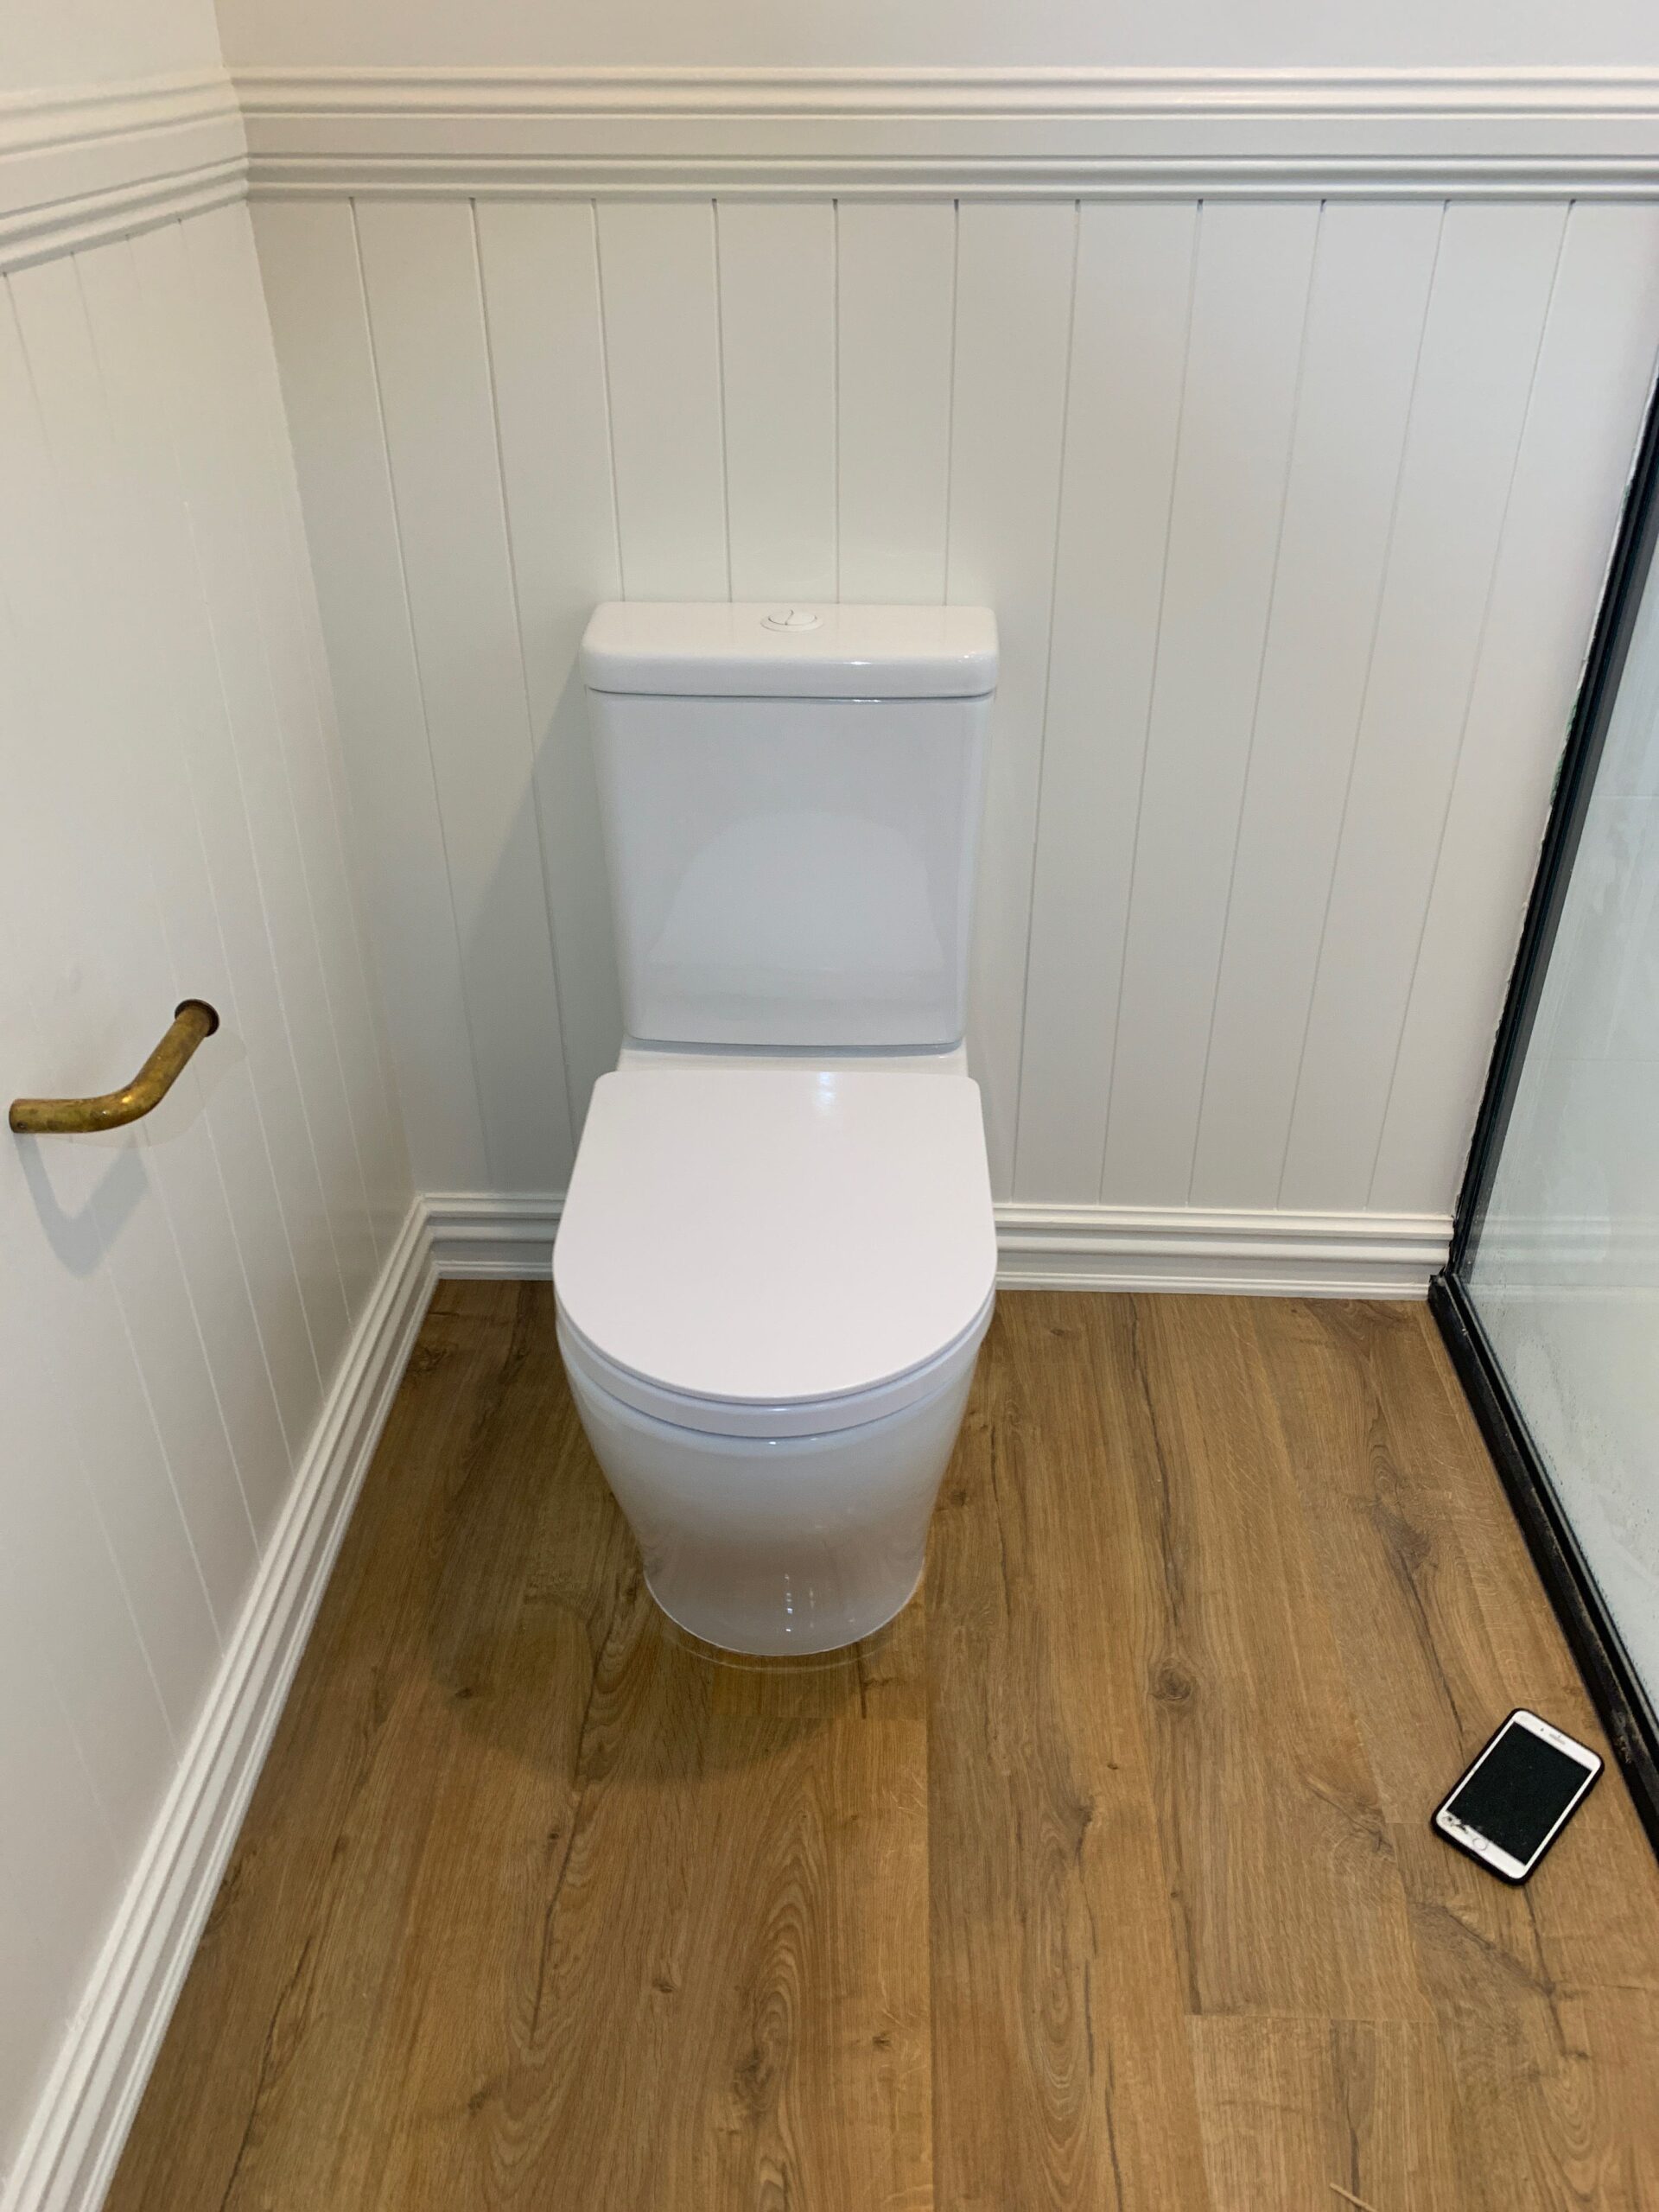 Bathroom Upgrades New Toilet